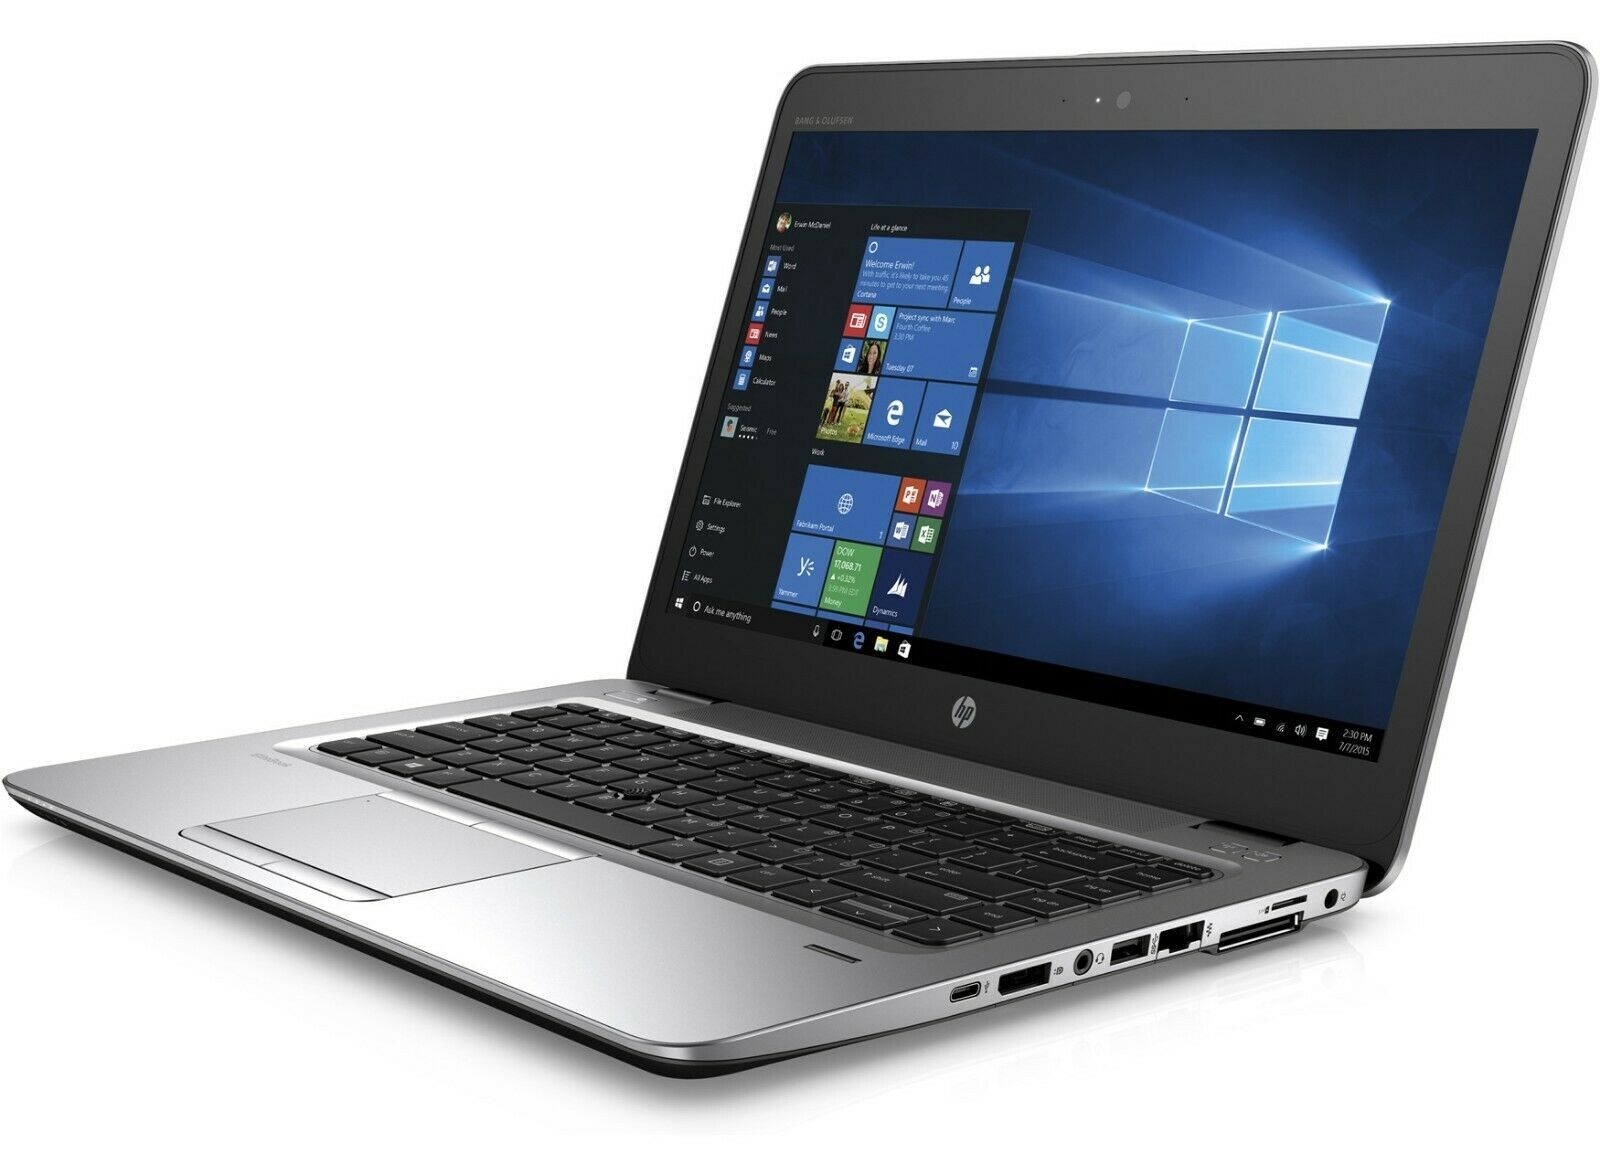 HP EliteBook 820 G3 Intel i5 6300U 2.40GHz 8GB RAM 256GB SSD 12.5" HD Win 10 - B Grade Image 1